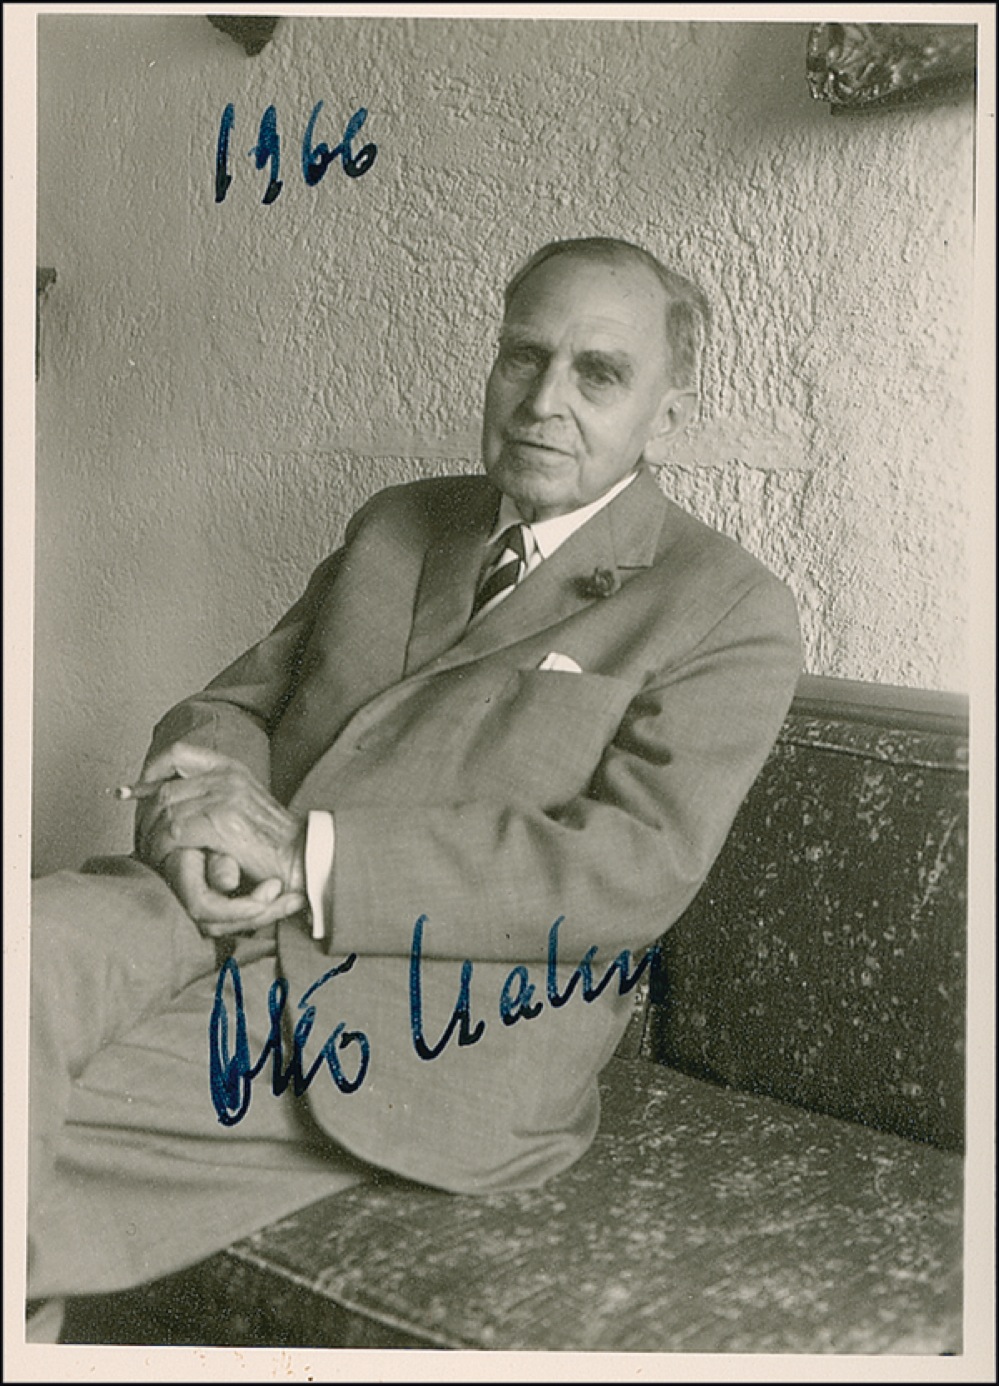 Lot #213 Otto Hahn